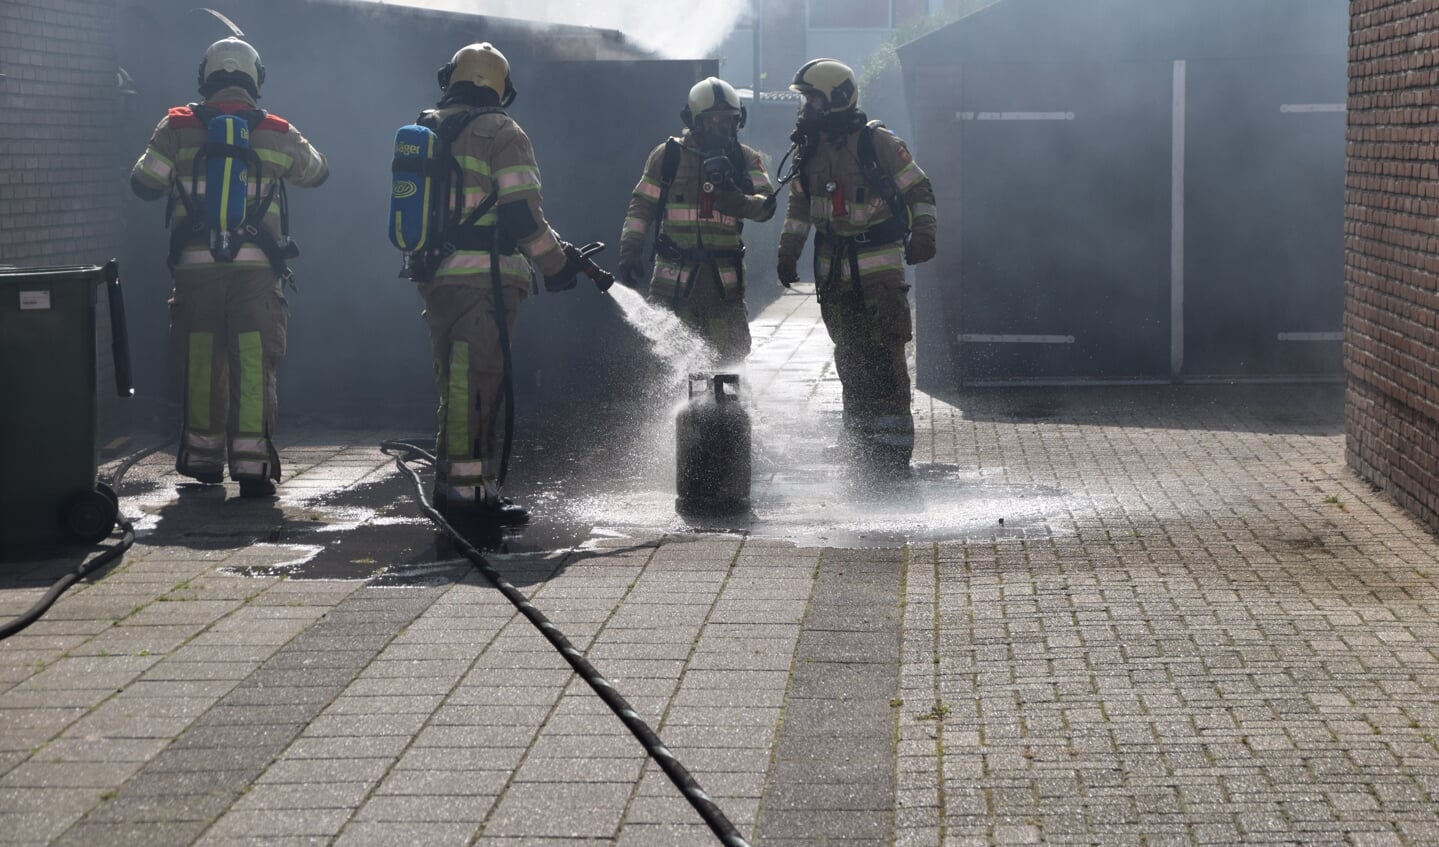 Brandweermannen koelen de gasfles die in de brandende schuur stond.